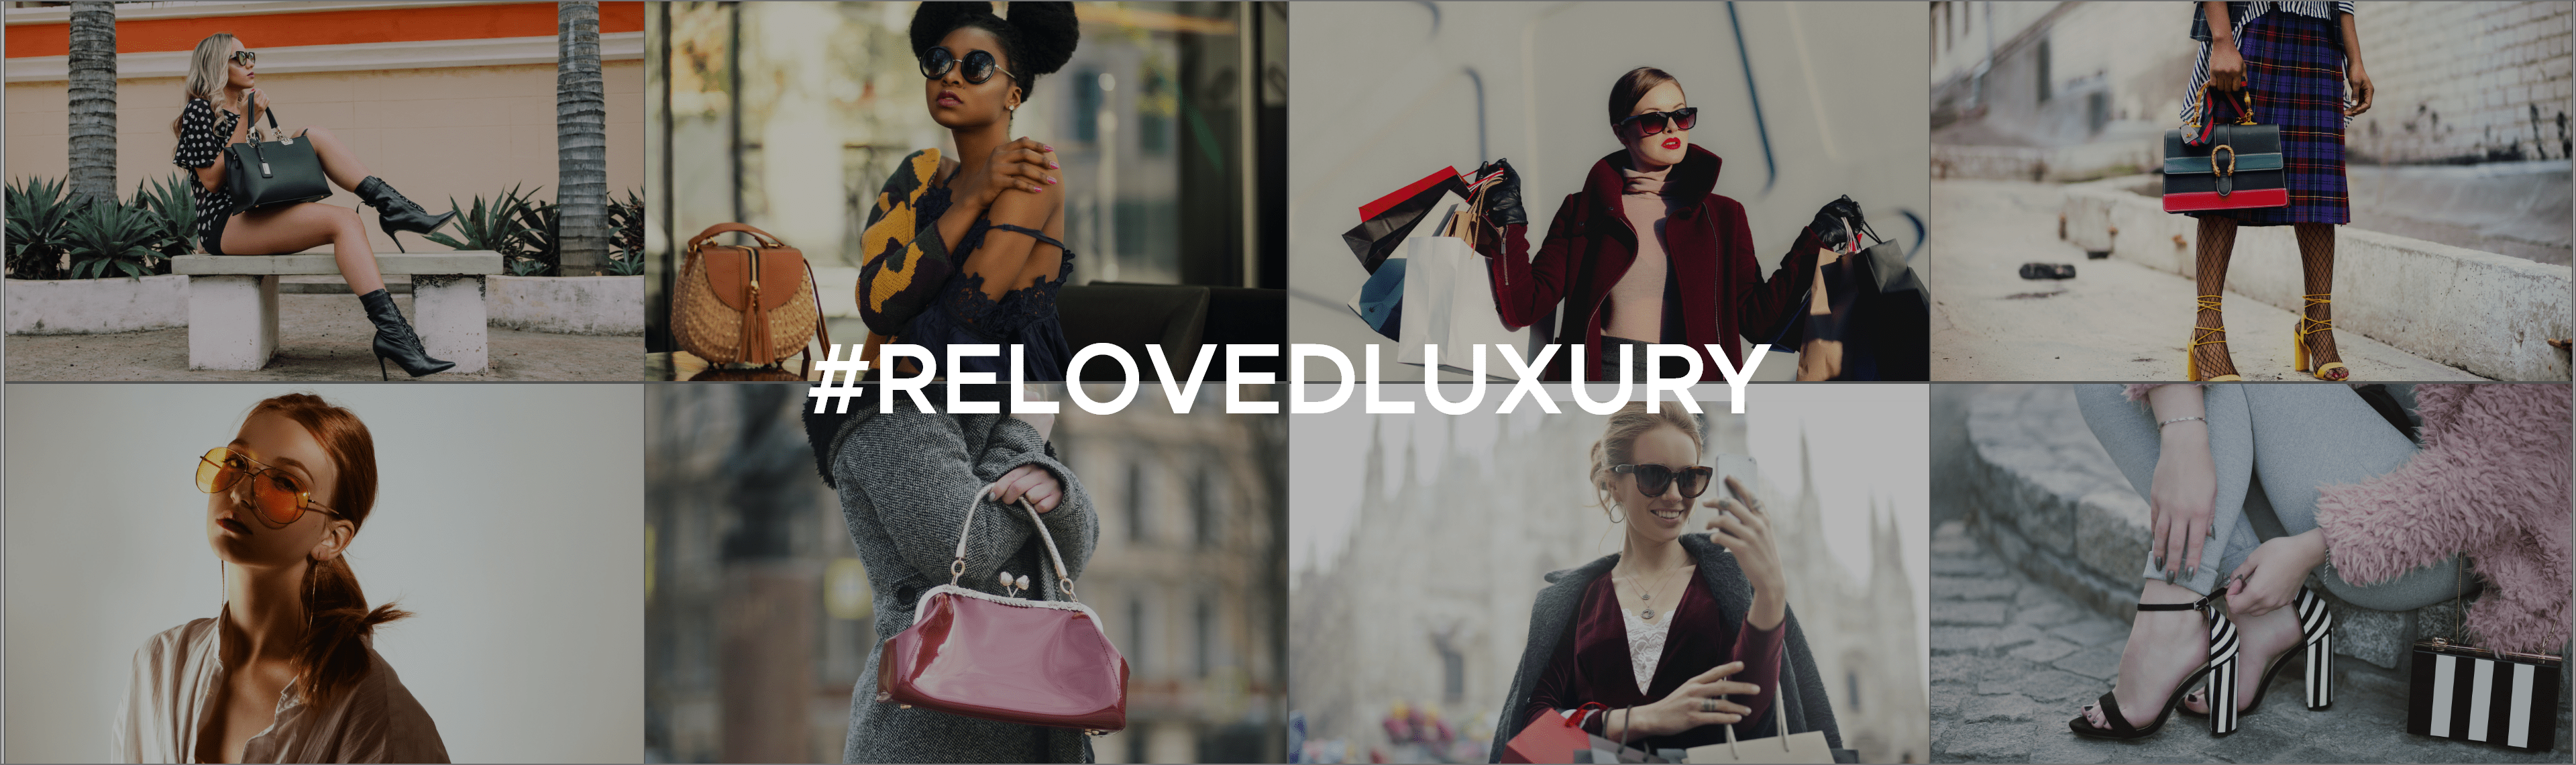 Re Loved Luxury Instagram